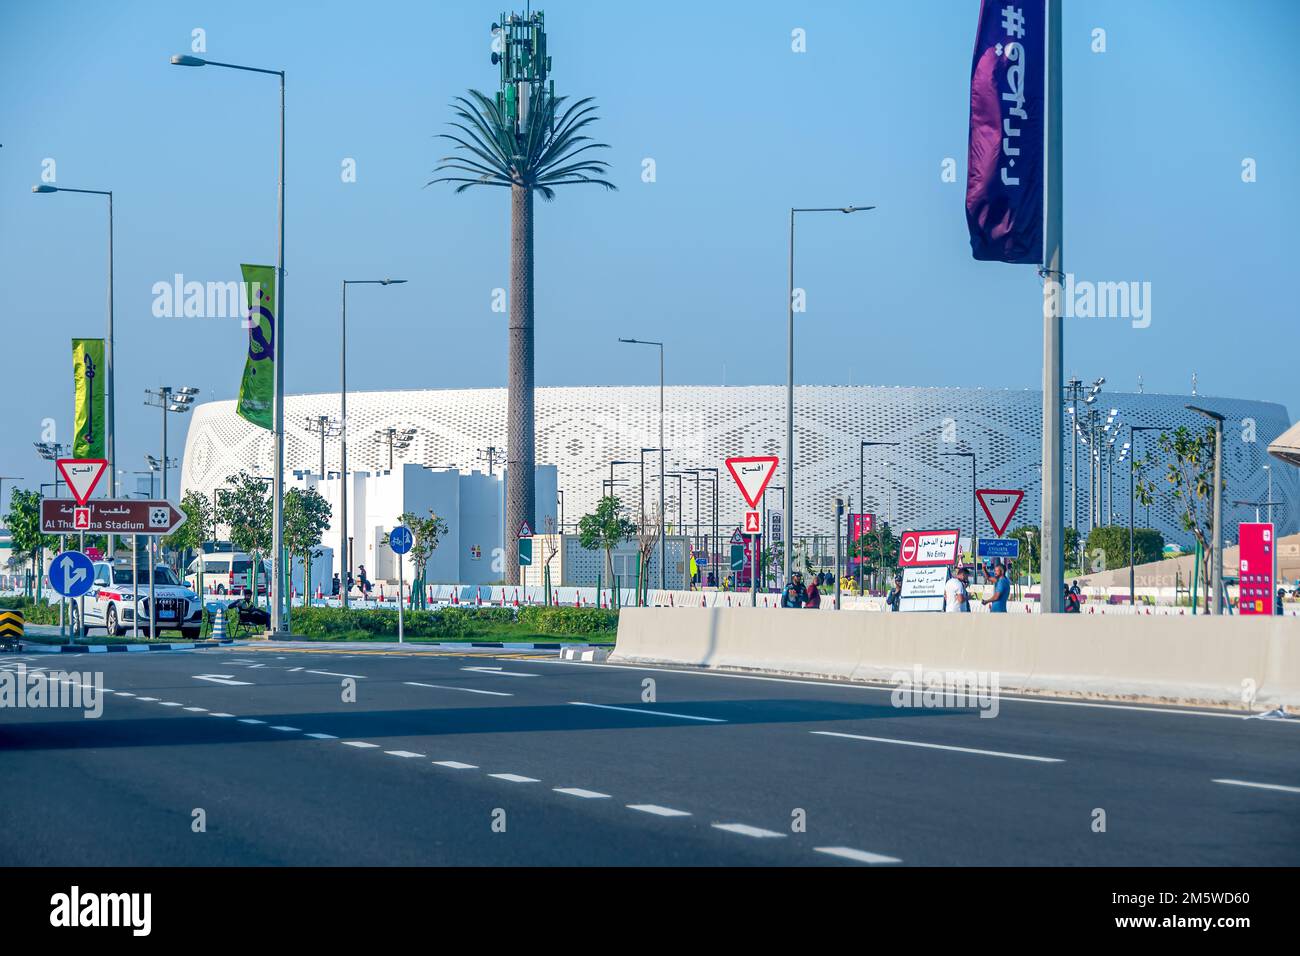 Ein allgemeiner Blick auf das Al Thumama Stadium, einer der Veranstaltungsorte für das FIFA Katar-Fußballweltmeisterschaftsturnier 2022. Stockfoto